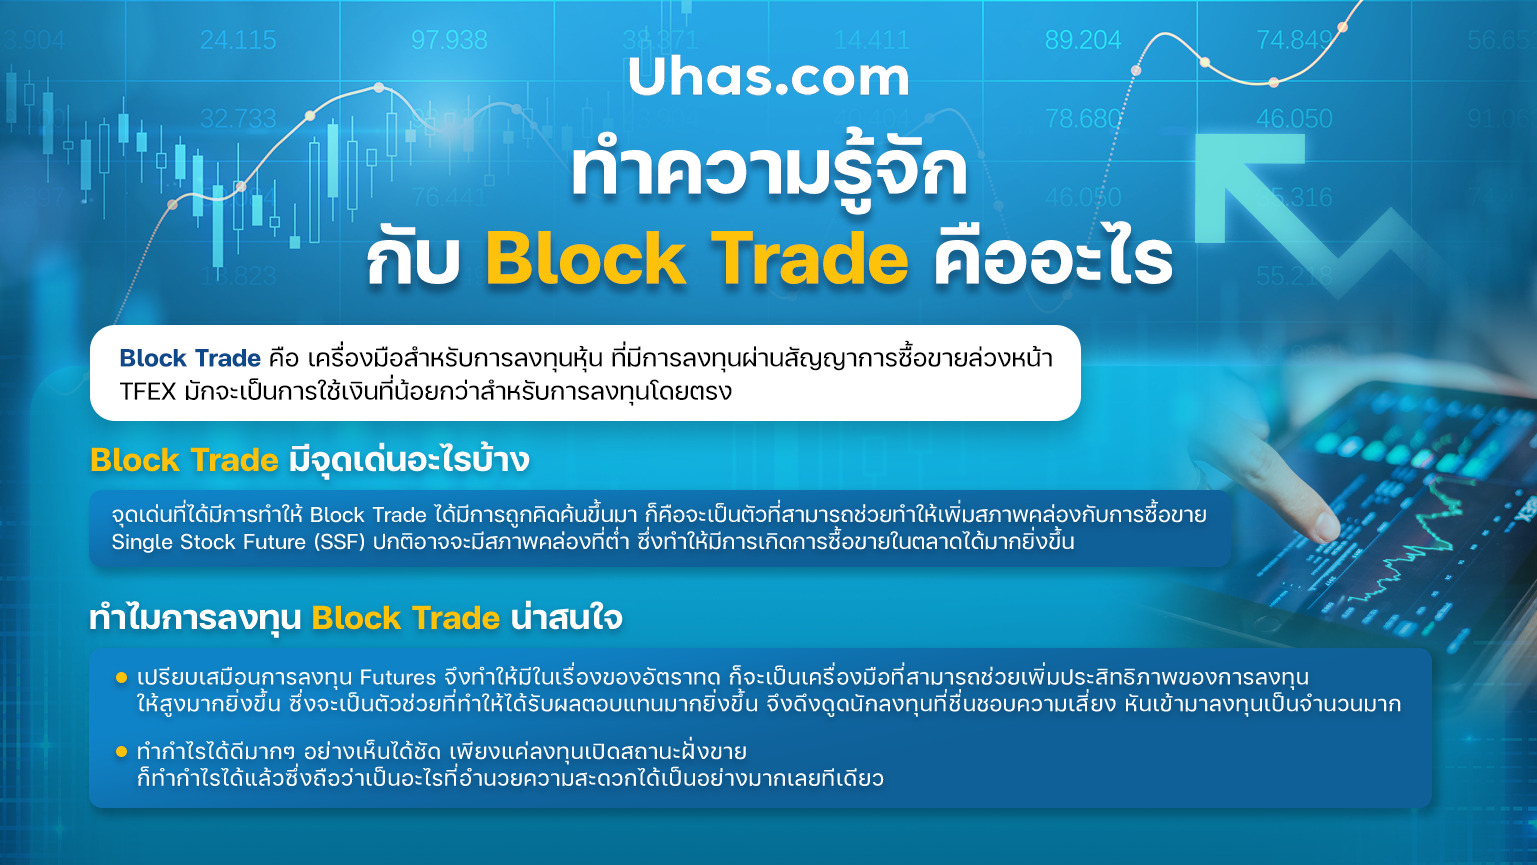 Block Trade มีจุดเด่นอะไรบ้าง - uhas